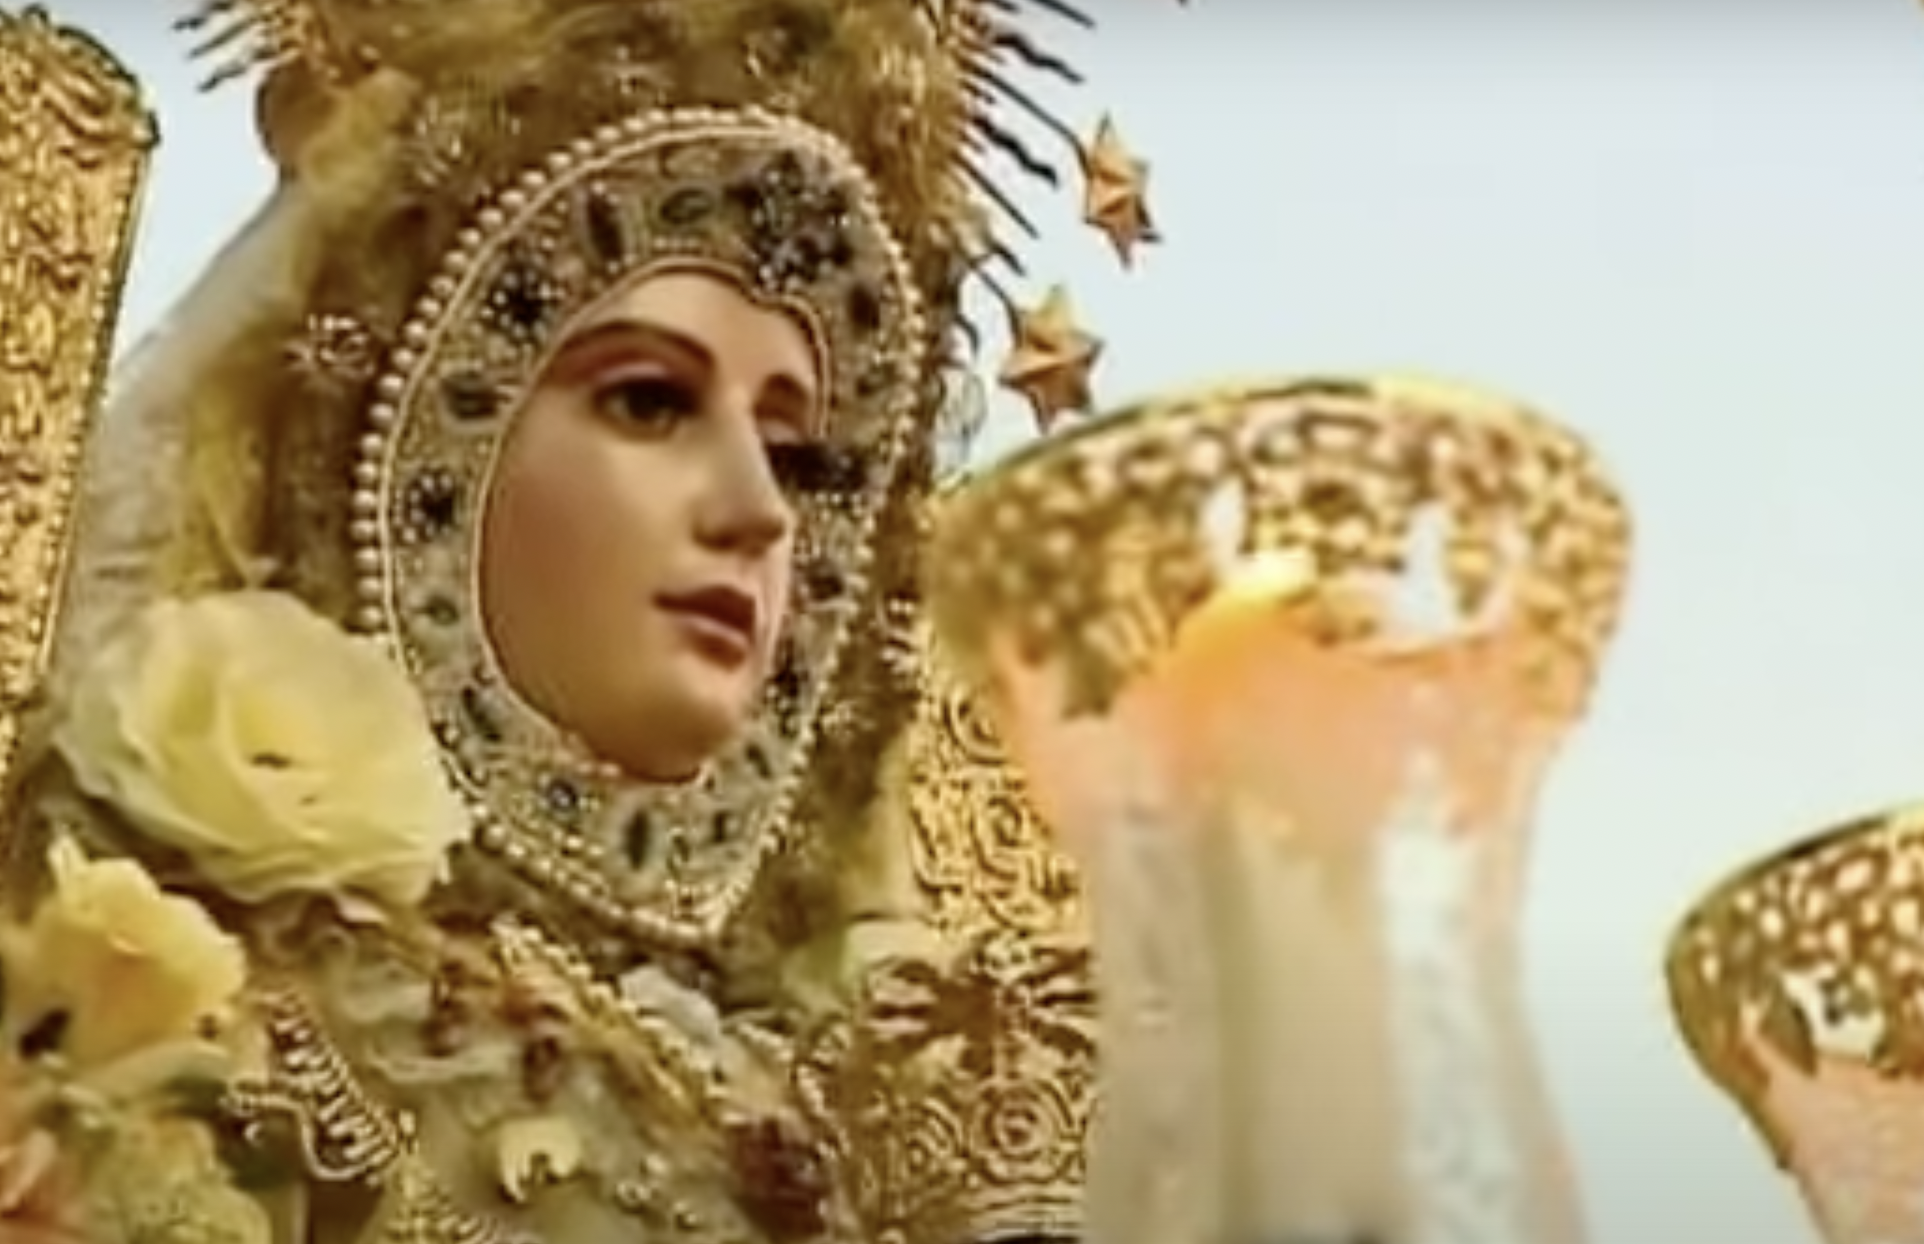 Rompen una mano y roban joyas a la imagen de la Virgen del Rocío de Cádiz. En la fotografía, el rostro de la talla de la Virgen.